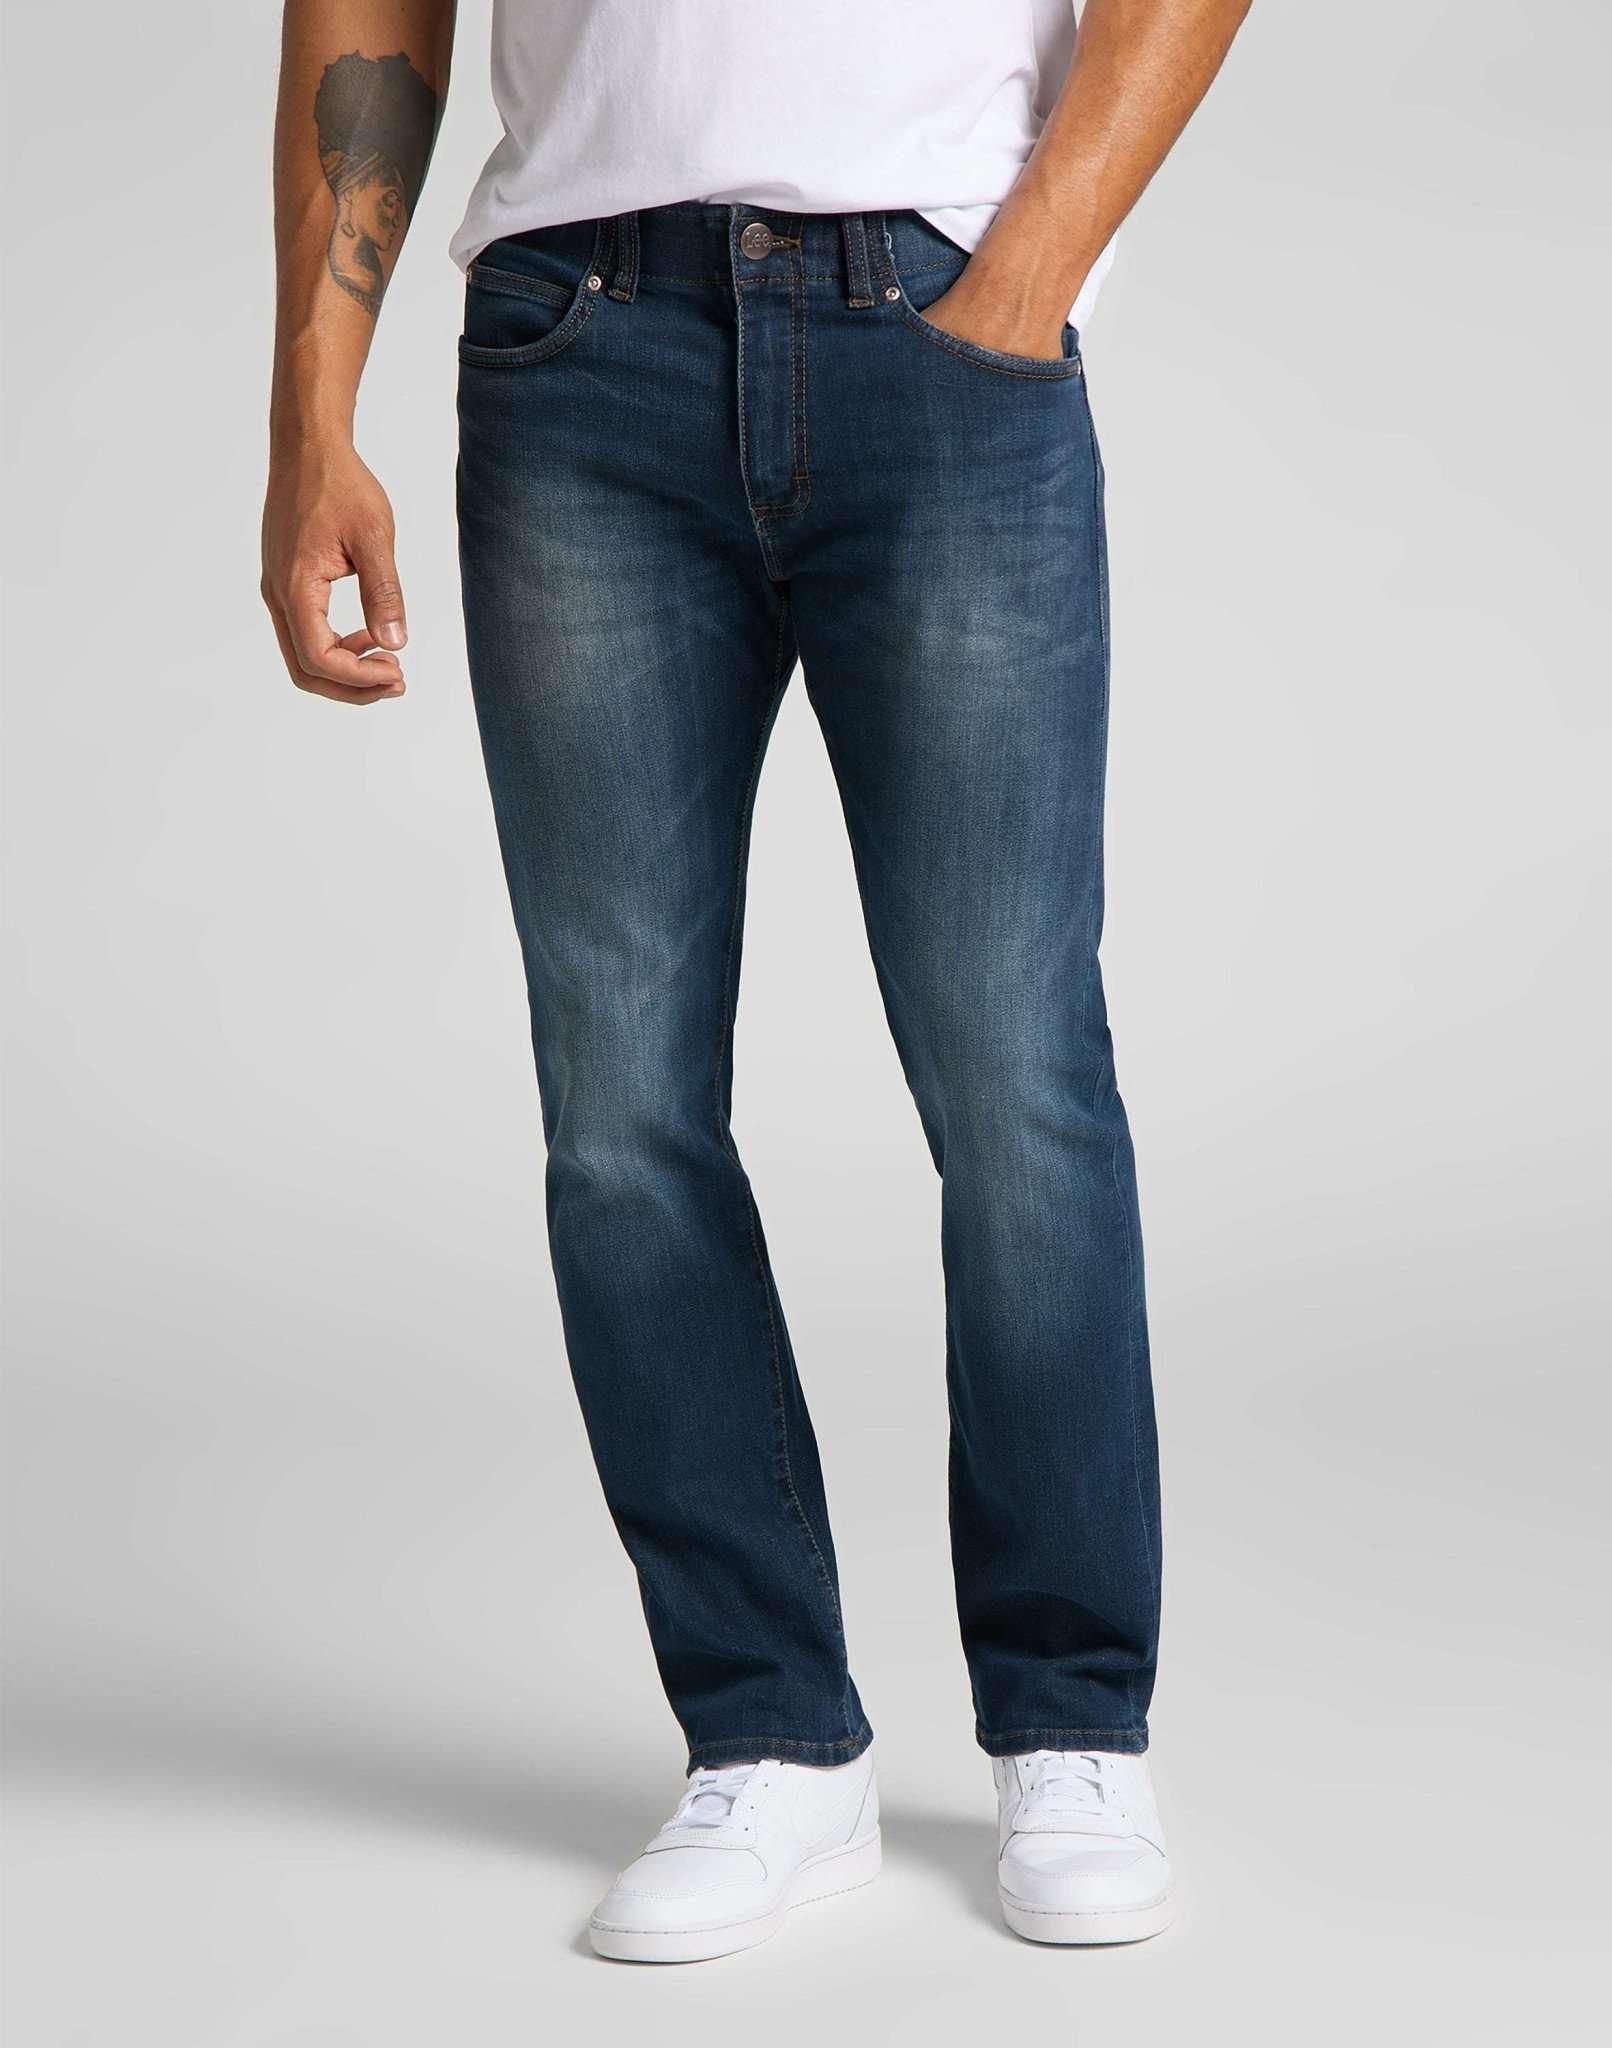 Jeans Slim Fit Mvp Herren Blau Denim L32/W31 von Lee